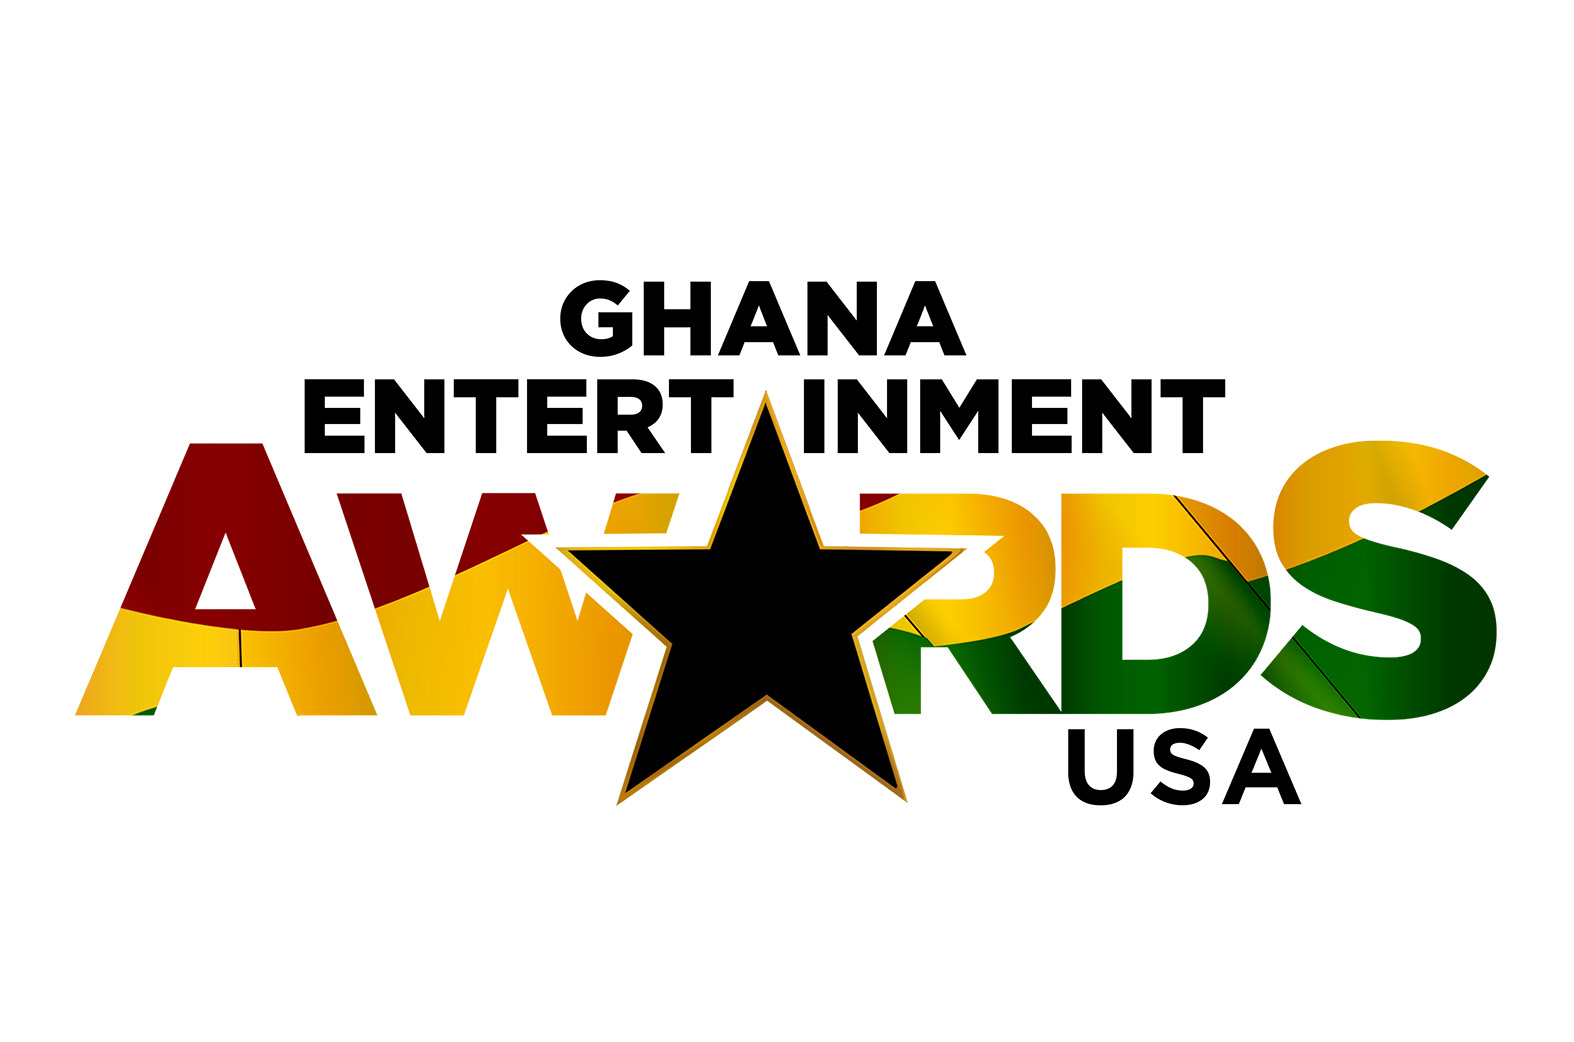 Full list of winners for 2018 Ghana Entertainment Awards USA